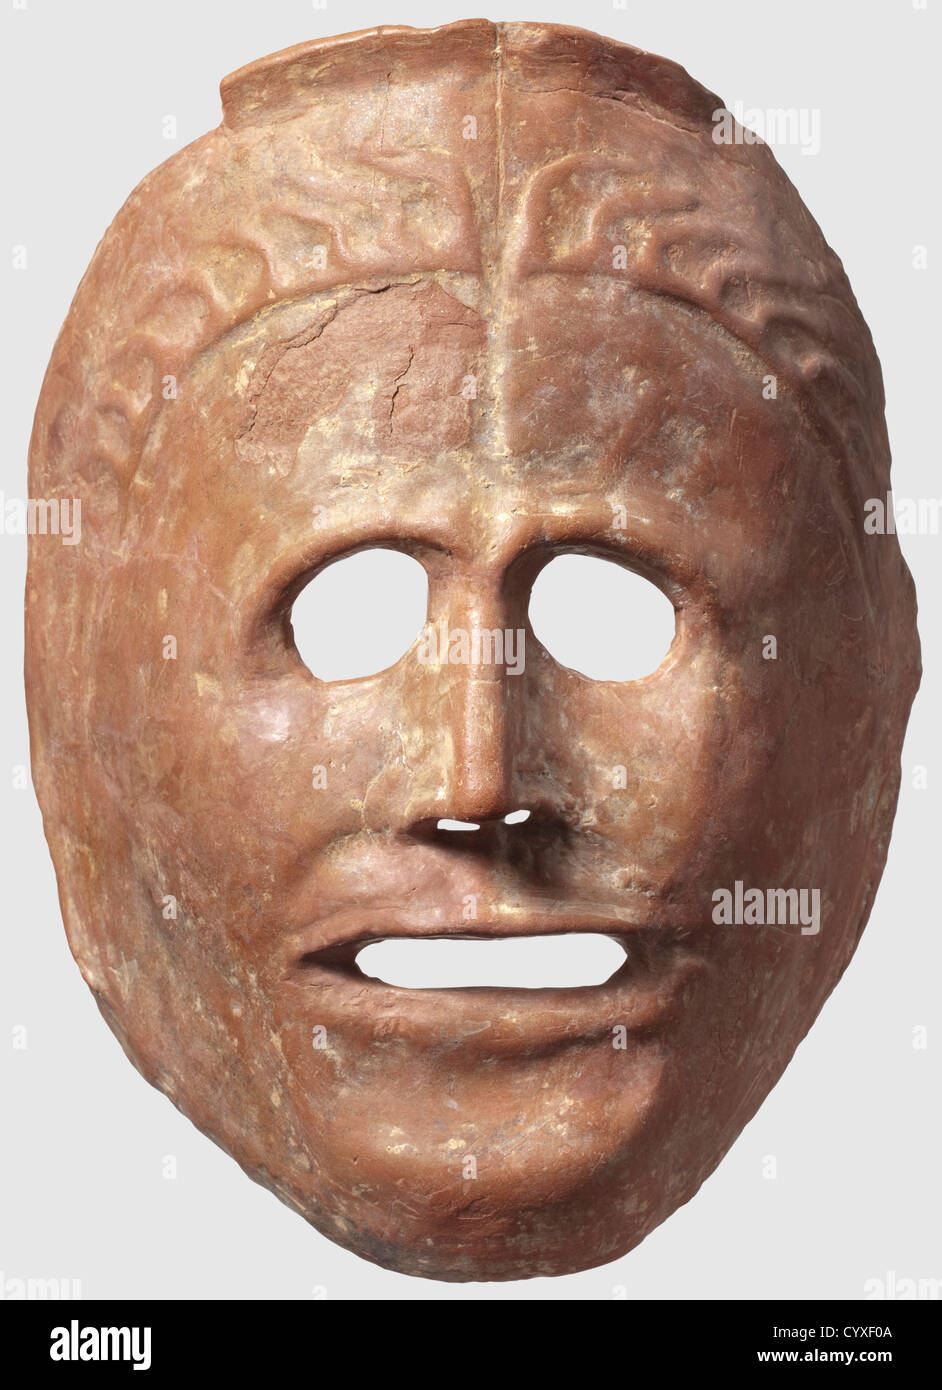 Un masque de théâtre grec, céramique rougeâtre de Colombie-Britannique du  6e/5e siècle. Masque semi-circulaire, à la forme naturelle, avec ouvertures  pour les yeux, la bouche et le nez, cheveux stylisés sur le